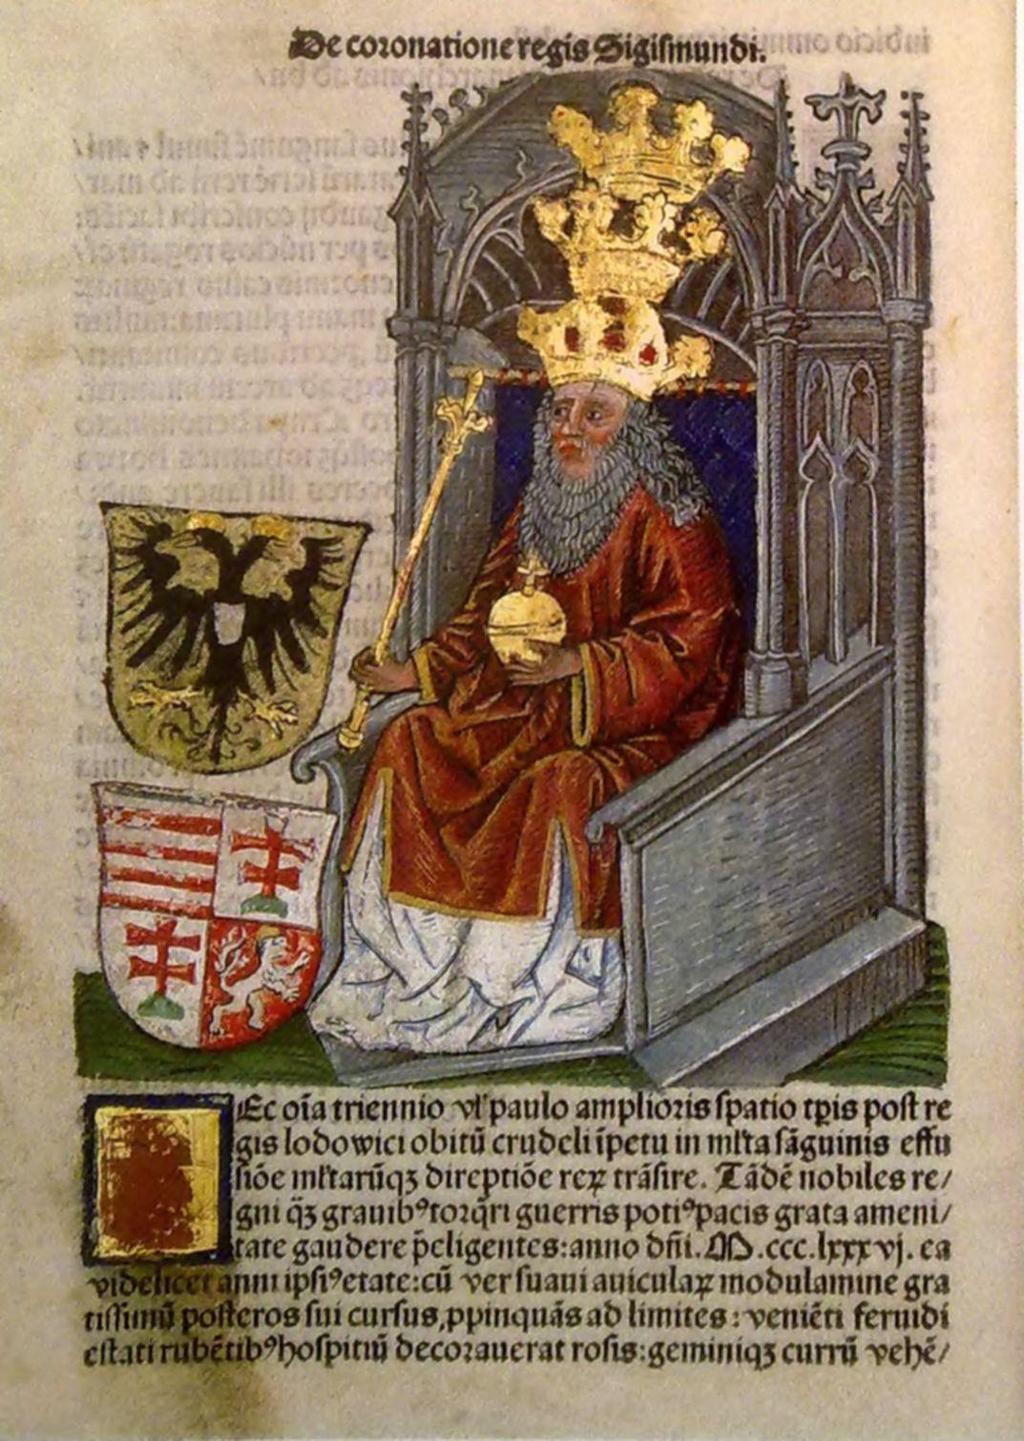 A SZUVERÉN URALKODÓ (1404-1410) A fegyverek békéje (1404-1408) Zsigmond király képmása a Thuróczy-krónikából, 1488 A polgárháború befejezése után 1404 közepére csend honolt az országban, habár